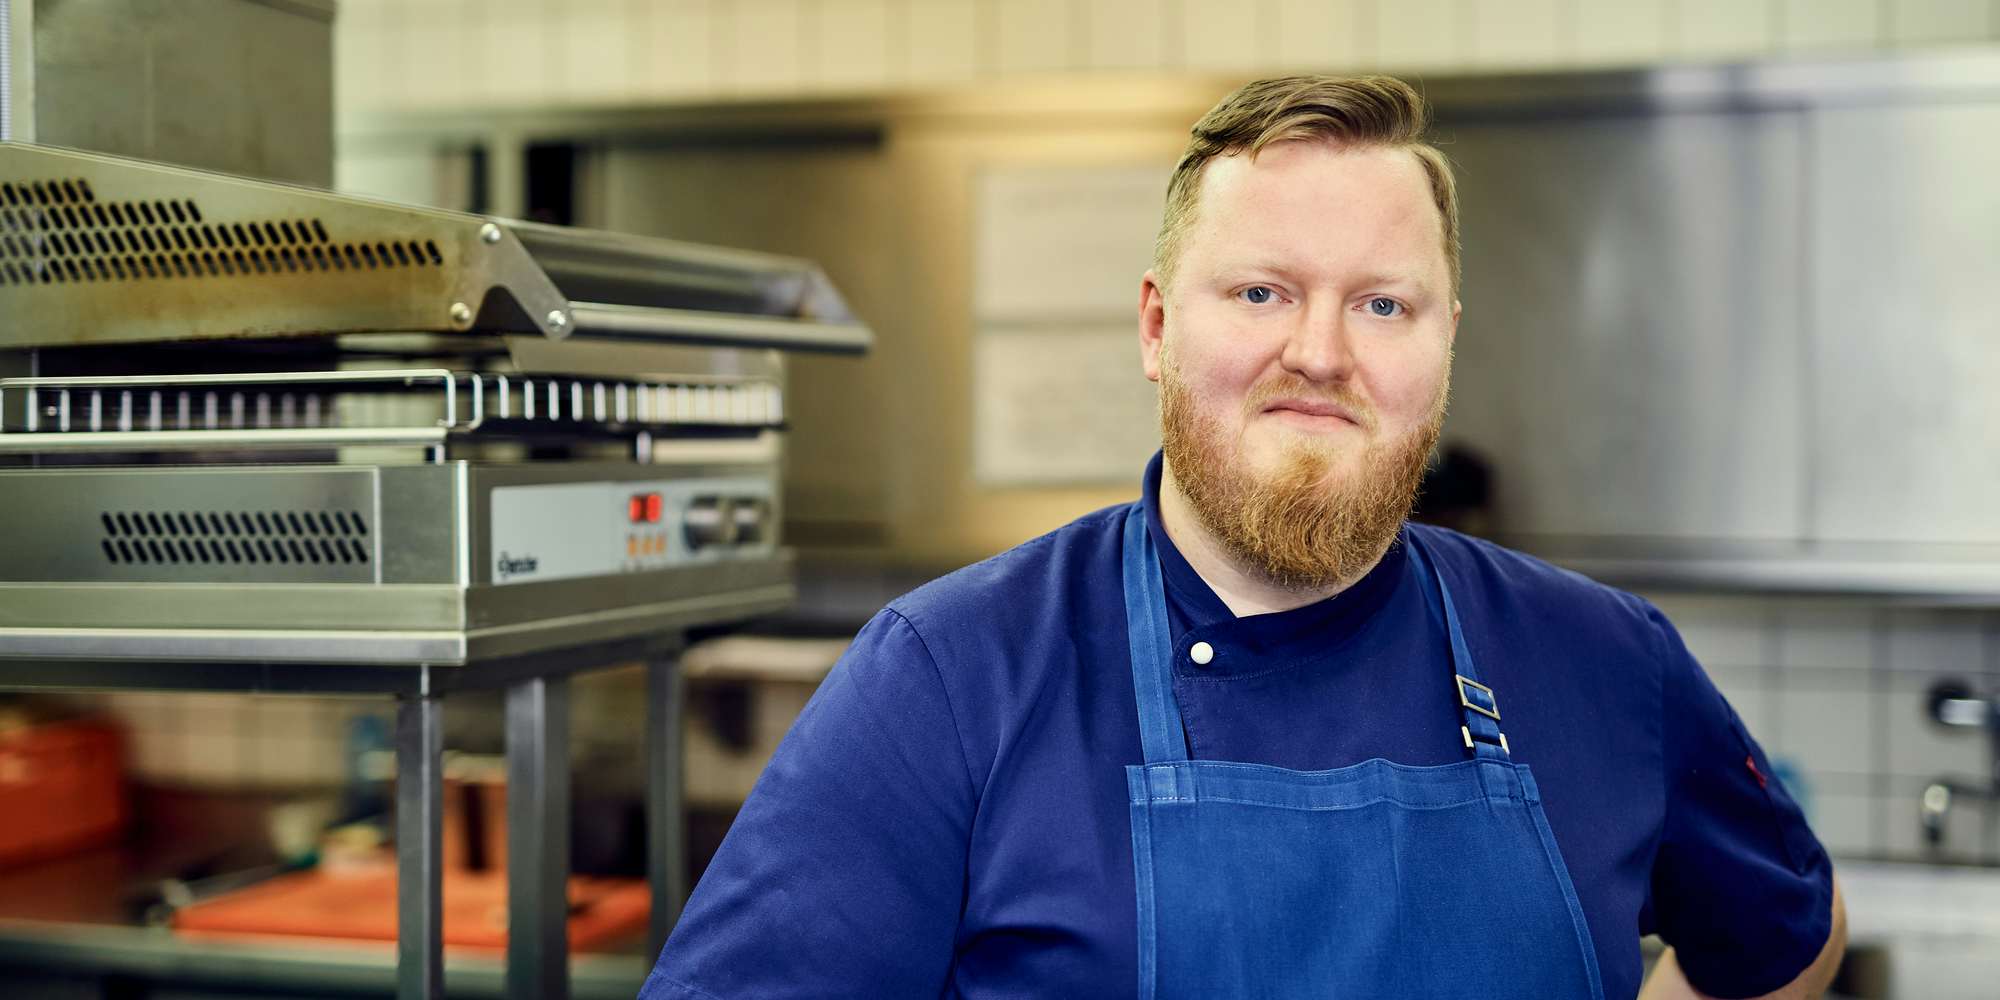 Küchendirektor Dominik Obermeier berichtet in der Küche über die Brasserie Colette Tim Raue als Arbeitgeber